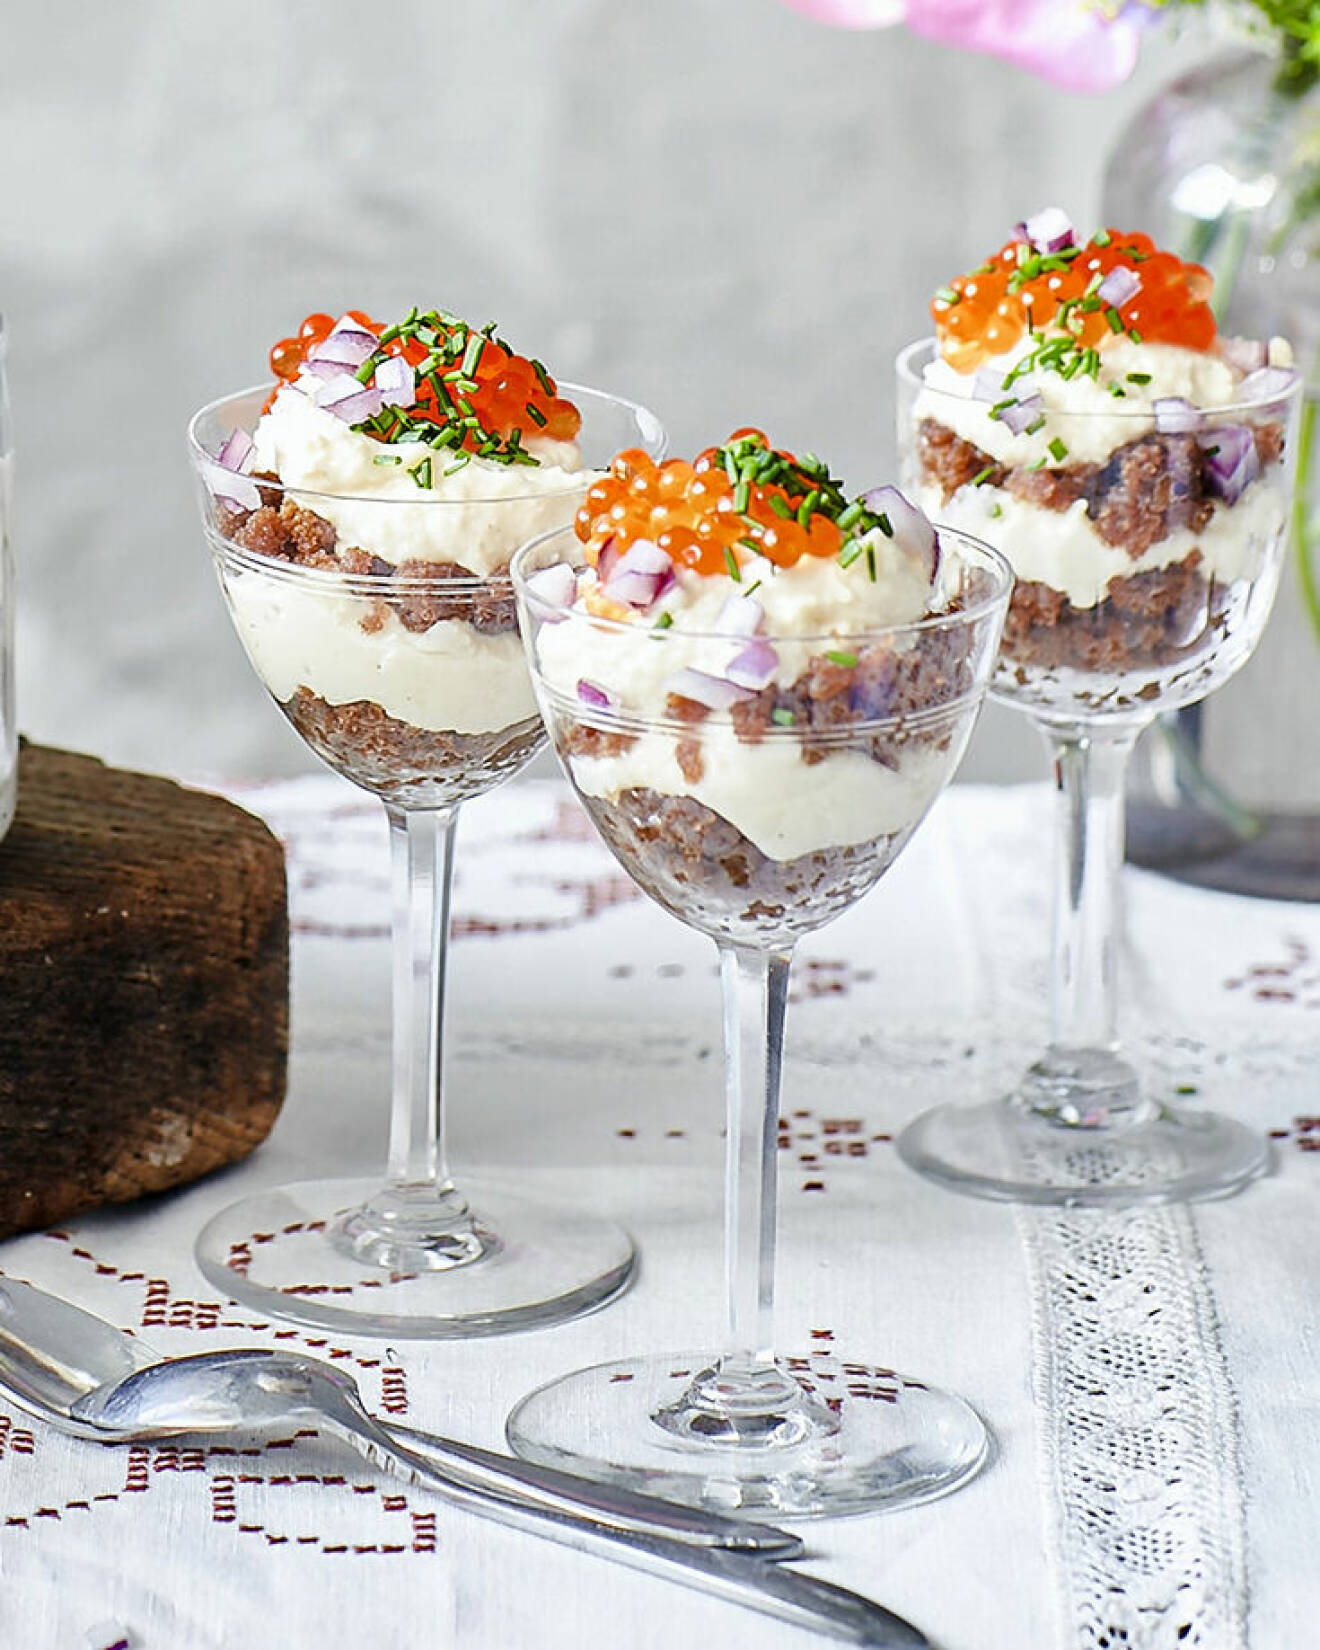 Lyxig cheesecake i glas med Västerbottenskräm är ett måste på midsommar